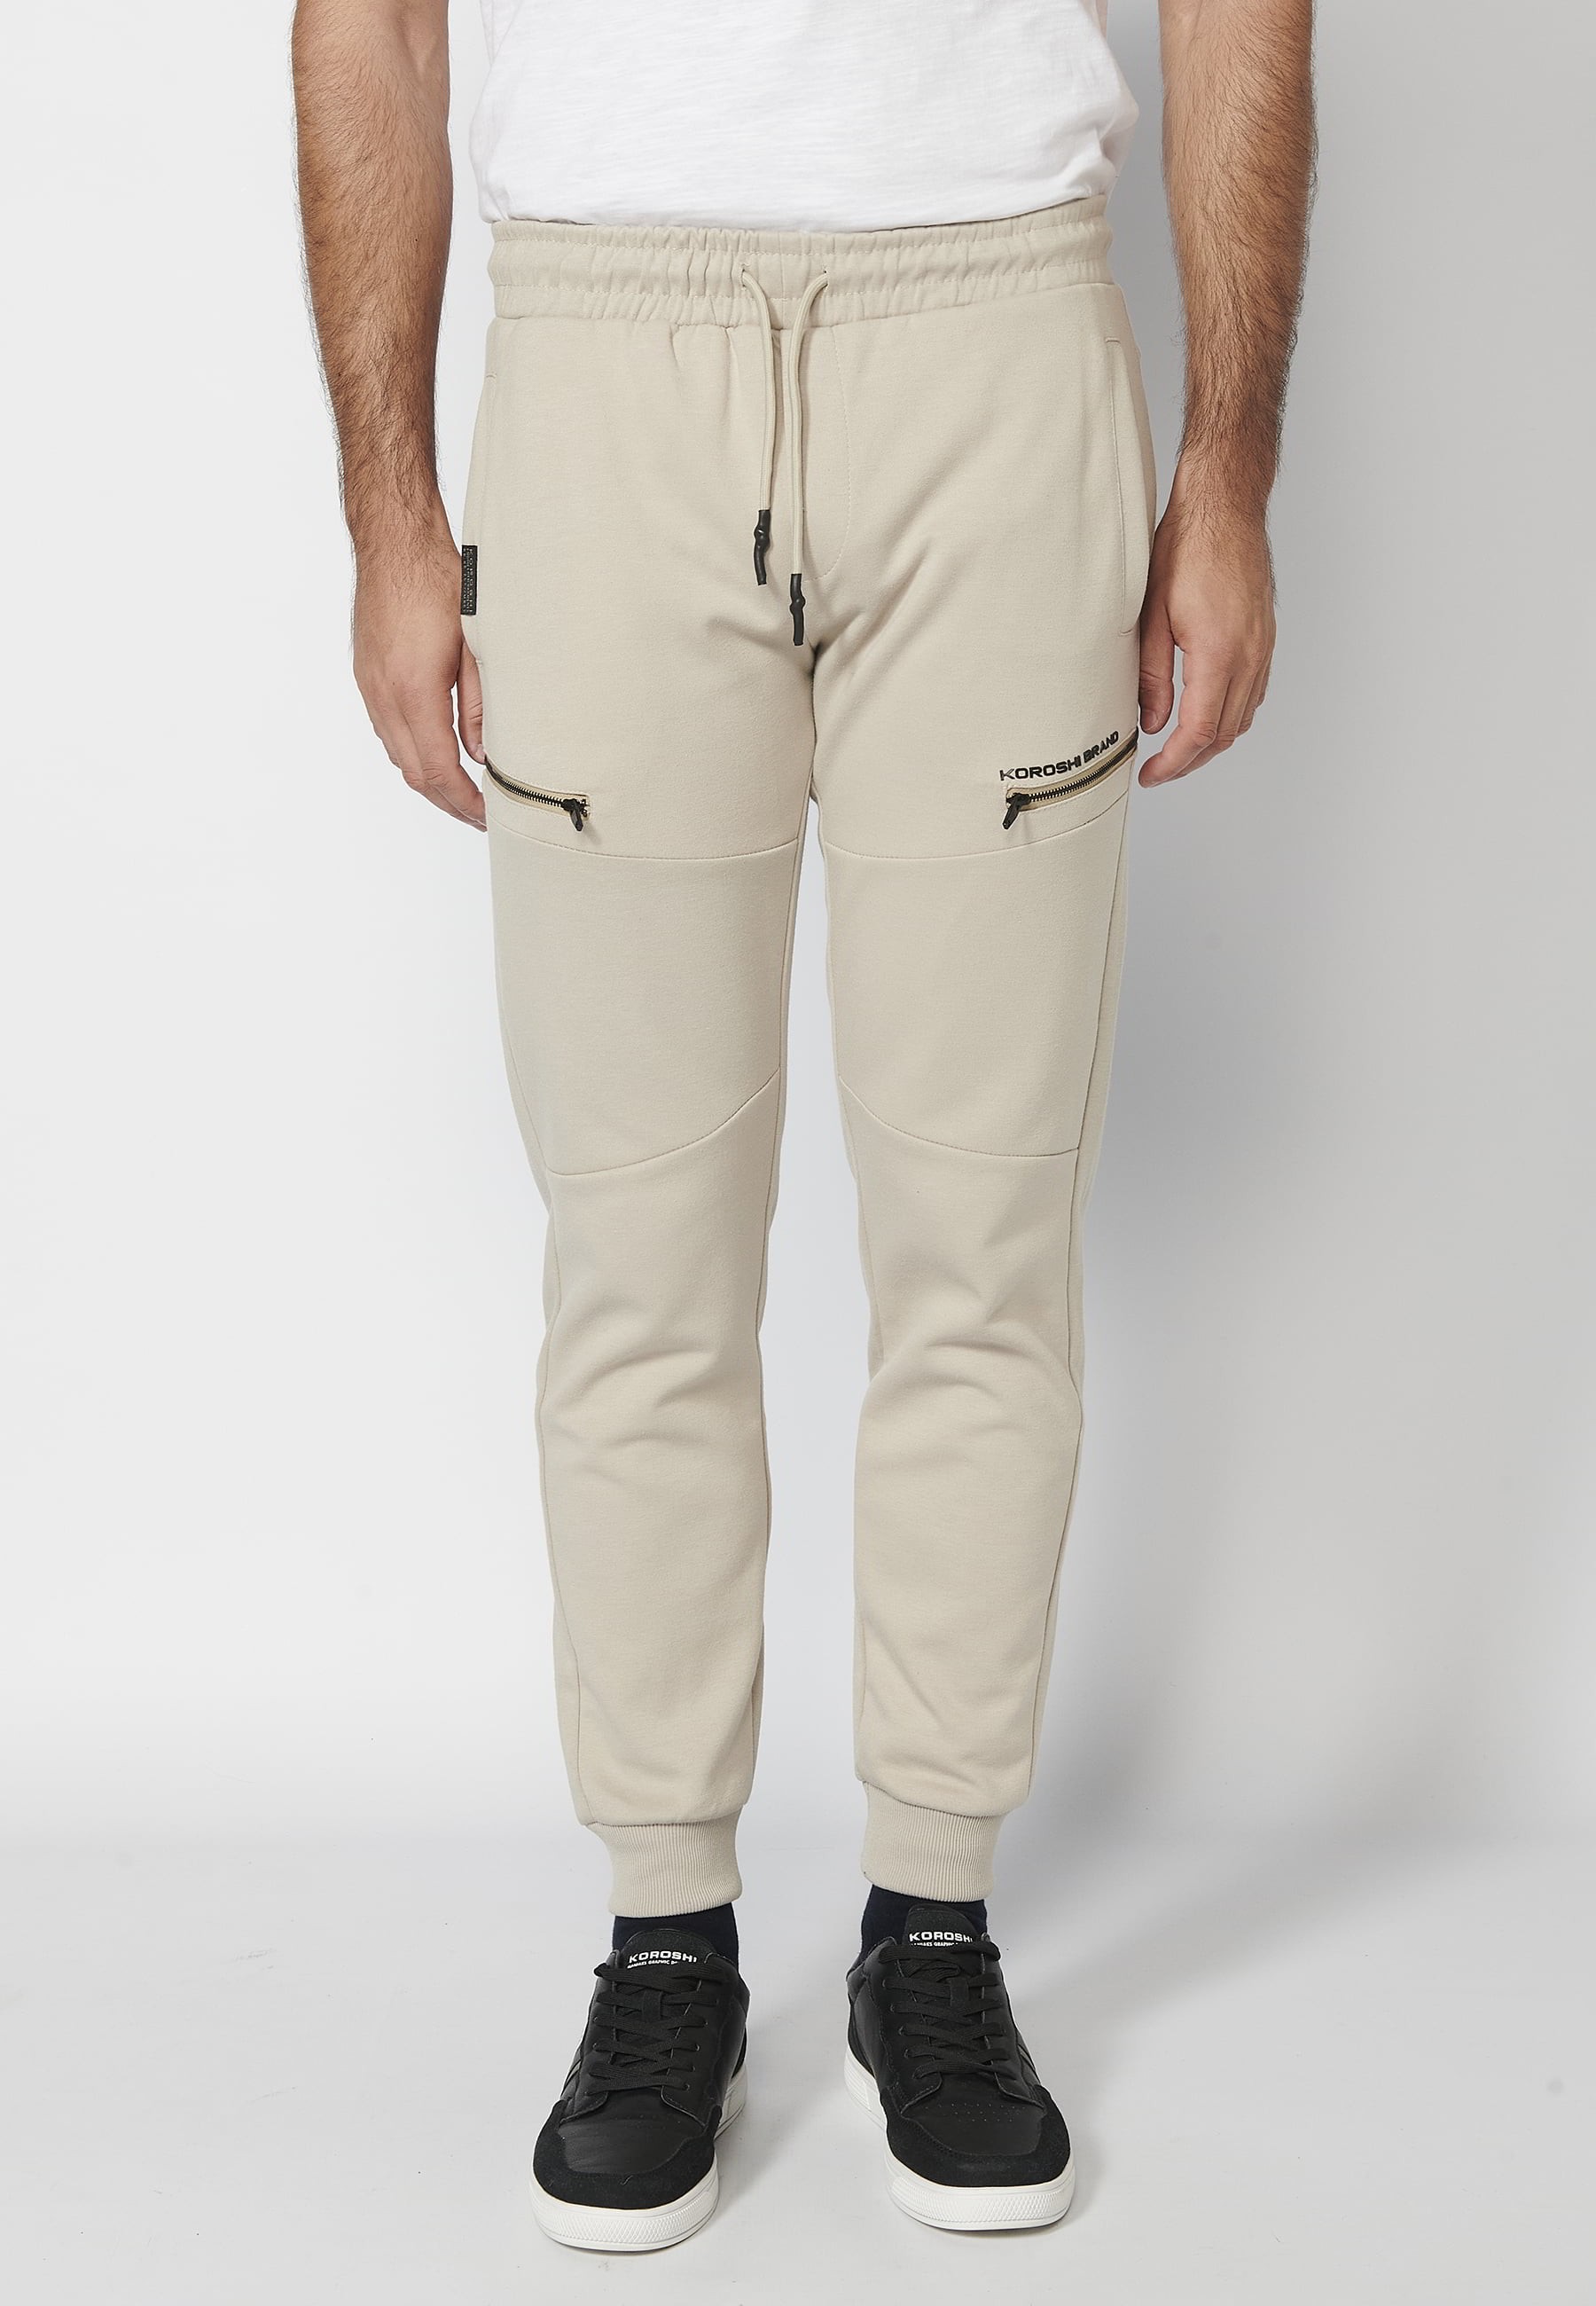 Pantalon de jogging long avec taille caoutchoutée et cordon de serrage avec découpes aux genoux, couleur Stone, pour Homme 2